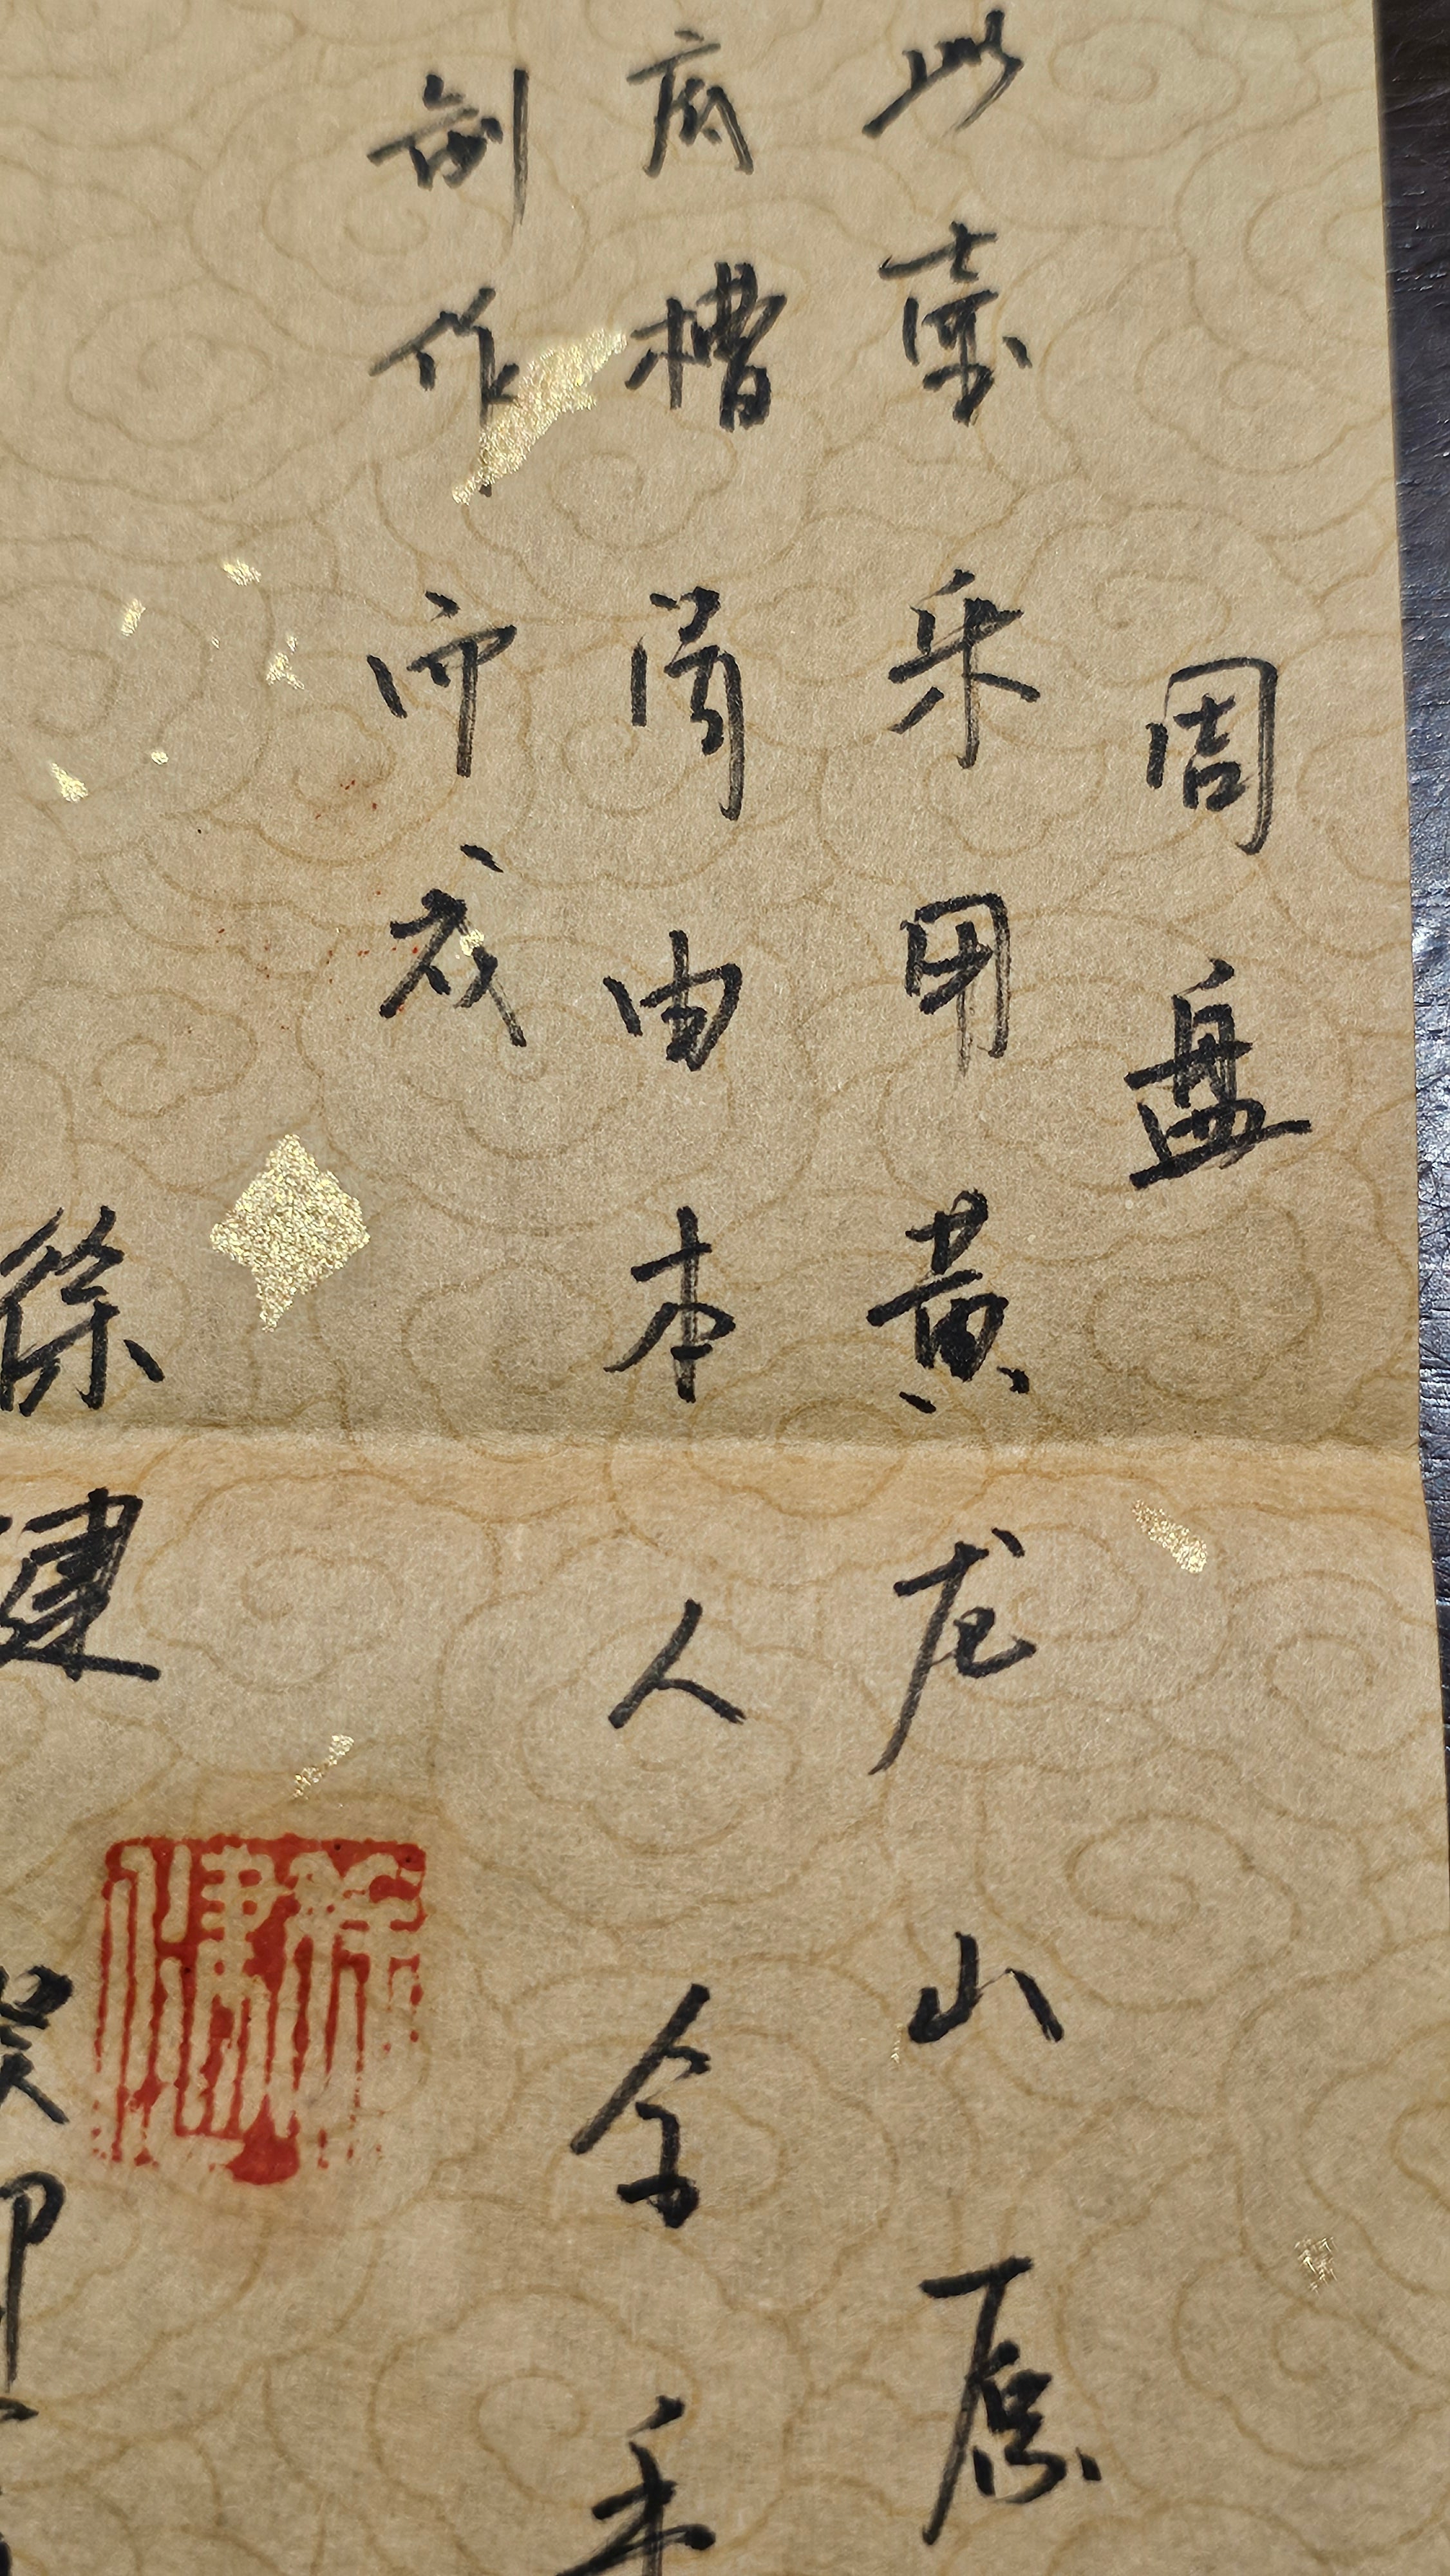 Zhou Pan 周盘, 165.3ml, Di Cao Qing Zi Ni 底槽青紫泥, L4 Assoc Master Artist Xu Jian 徐健。